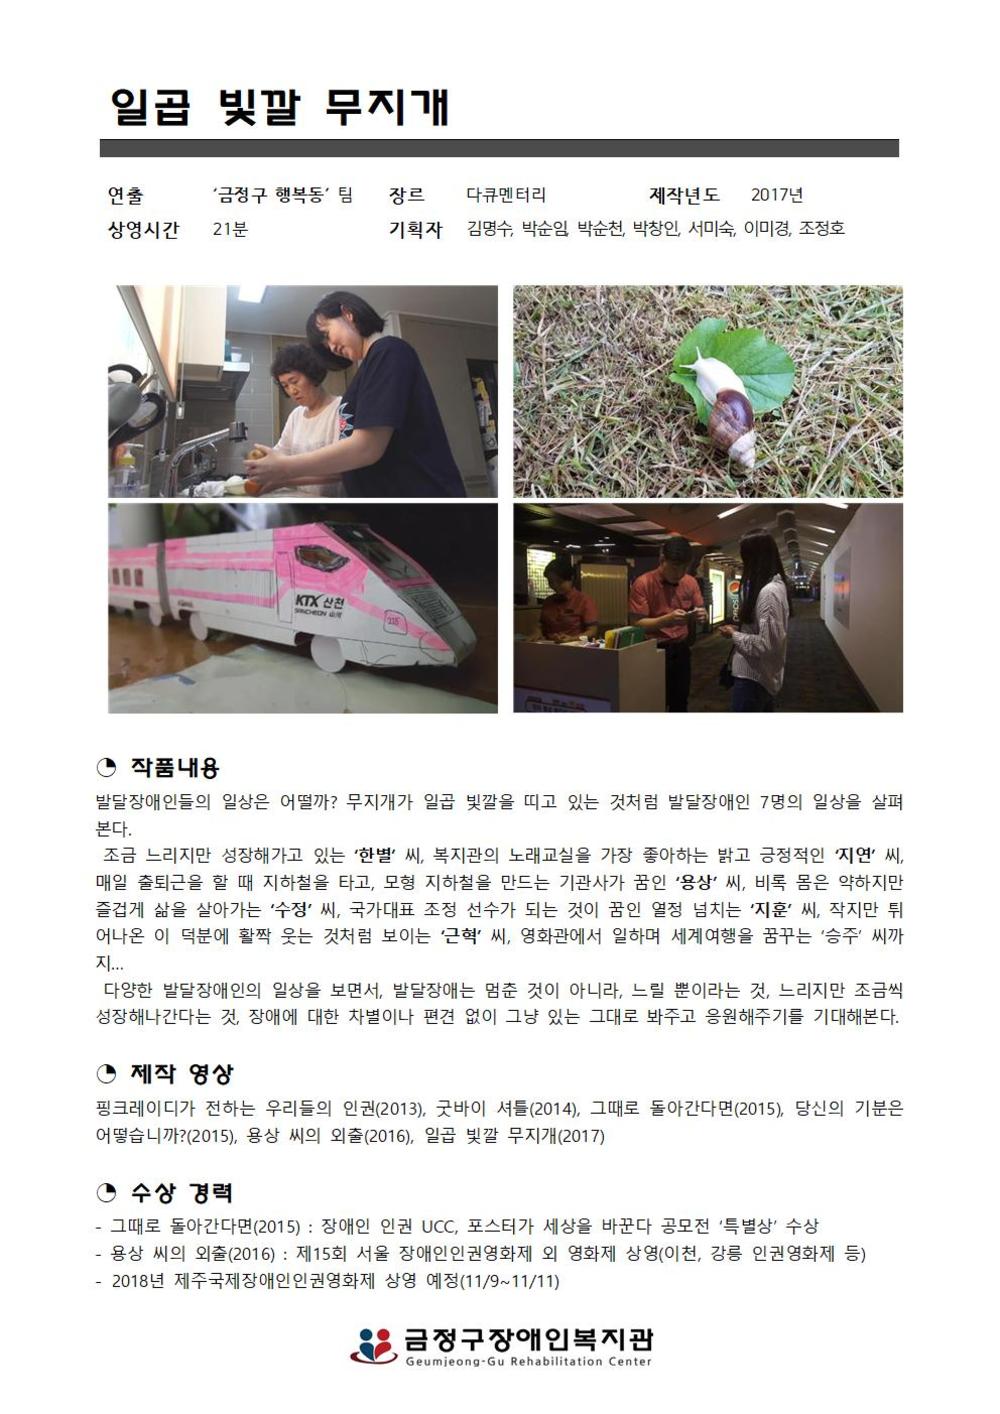 장애인식개선 미디어 제작단 프로그램 ‘금정구 행복동-2’ 미디어 택배(영화 상영) 신청 안내